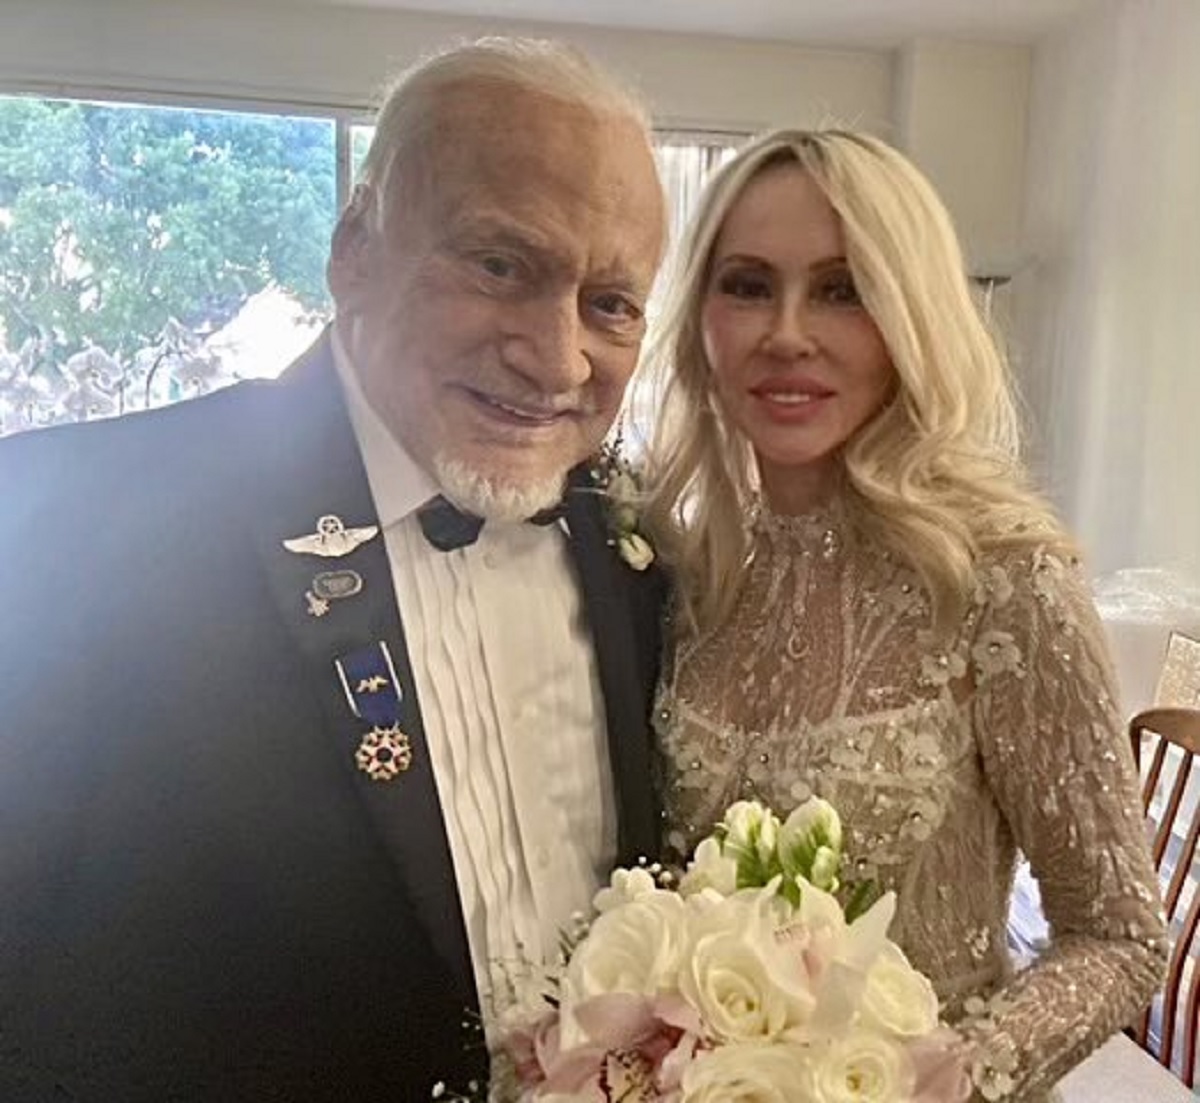 ΗΠΑ: Ο θρυλικός αστροναύτης Μπαζ Όλντριν παντρεύτηκε την επί χρόνια σύντροφό του